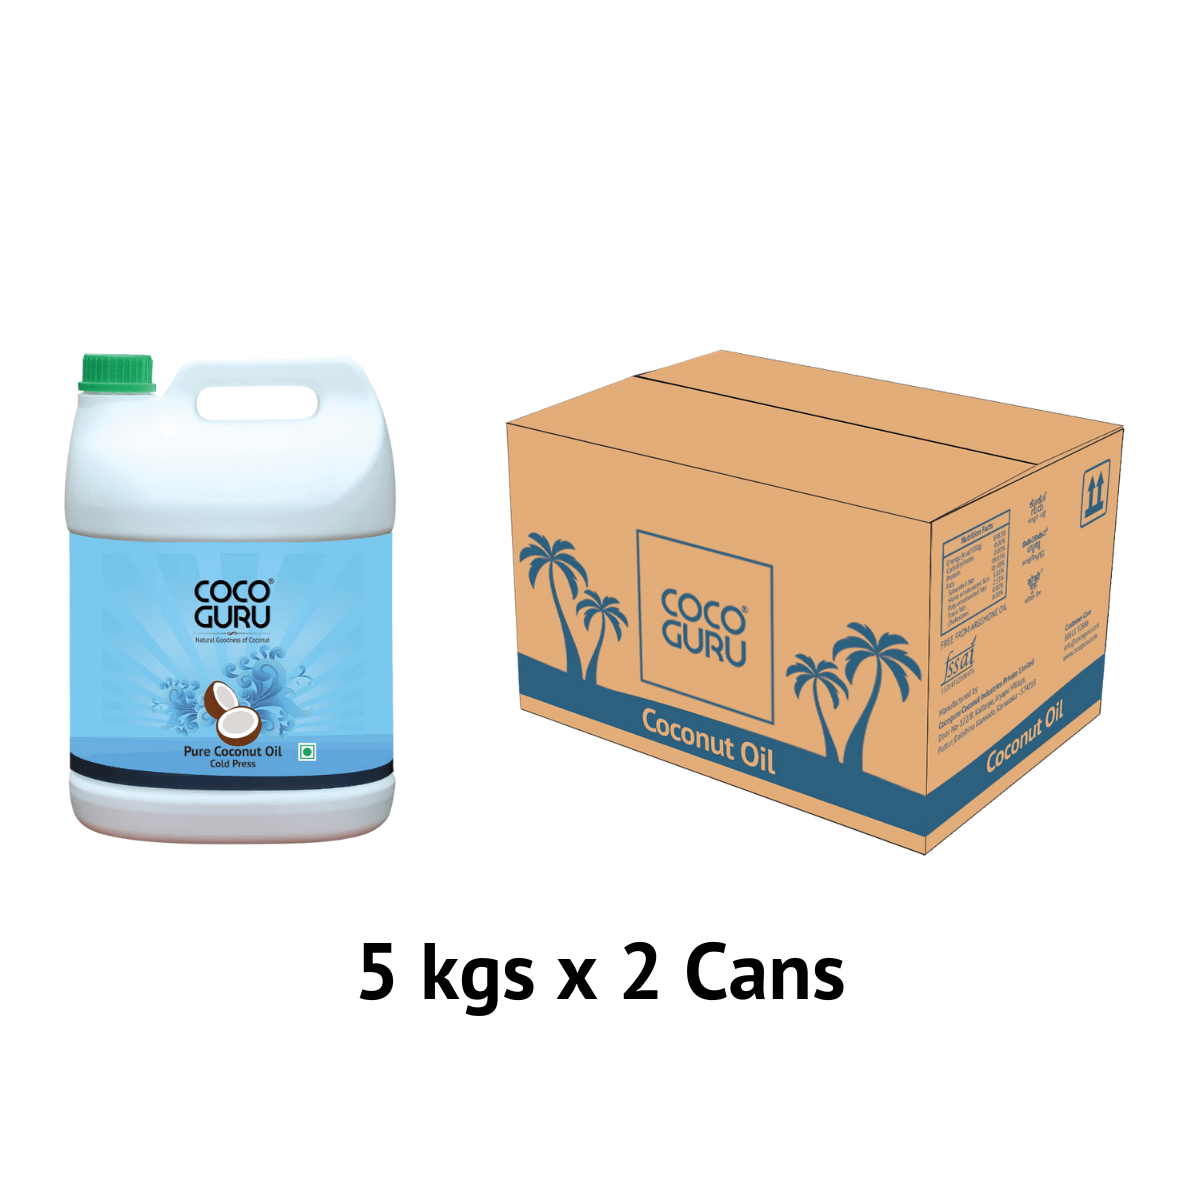 Cocoguru Cold Pressed Coconut Oil in Jerry Can 5 kgs – 10 kgs Box